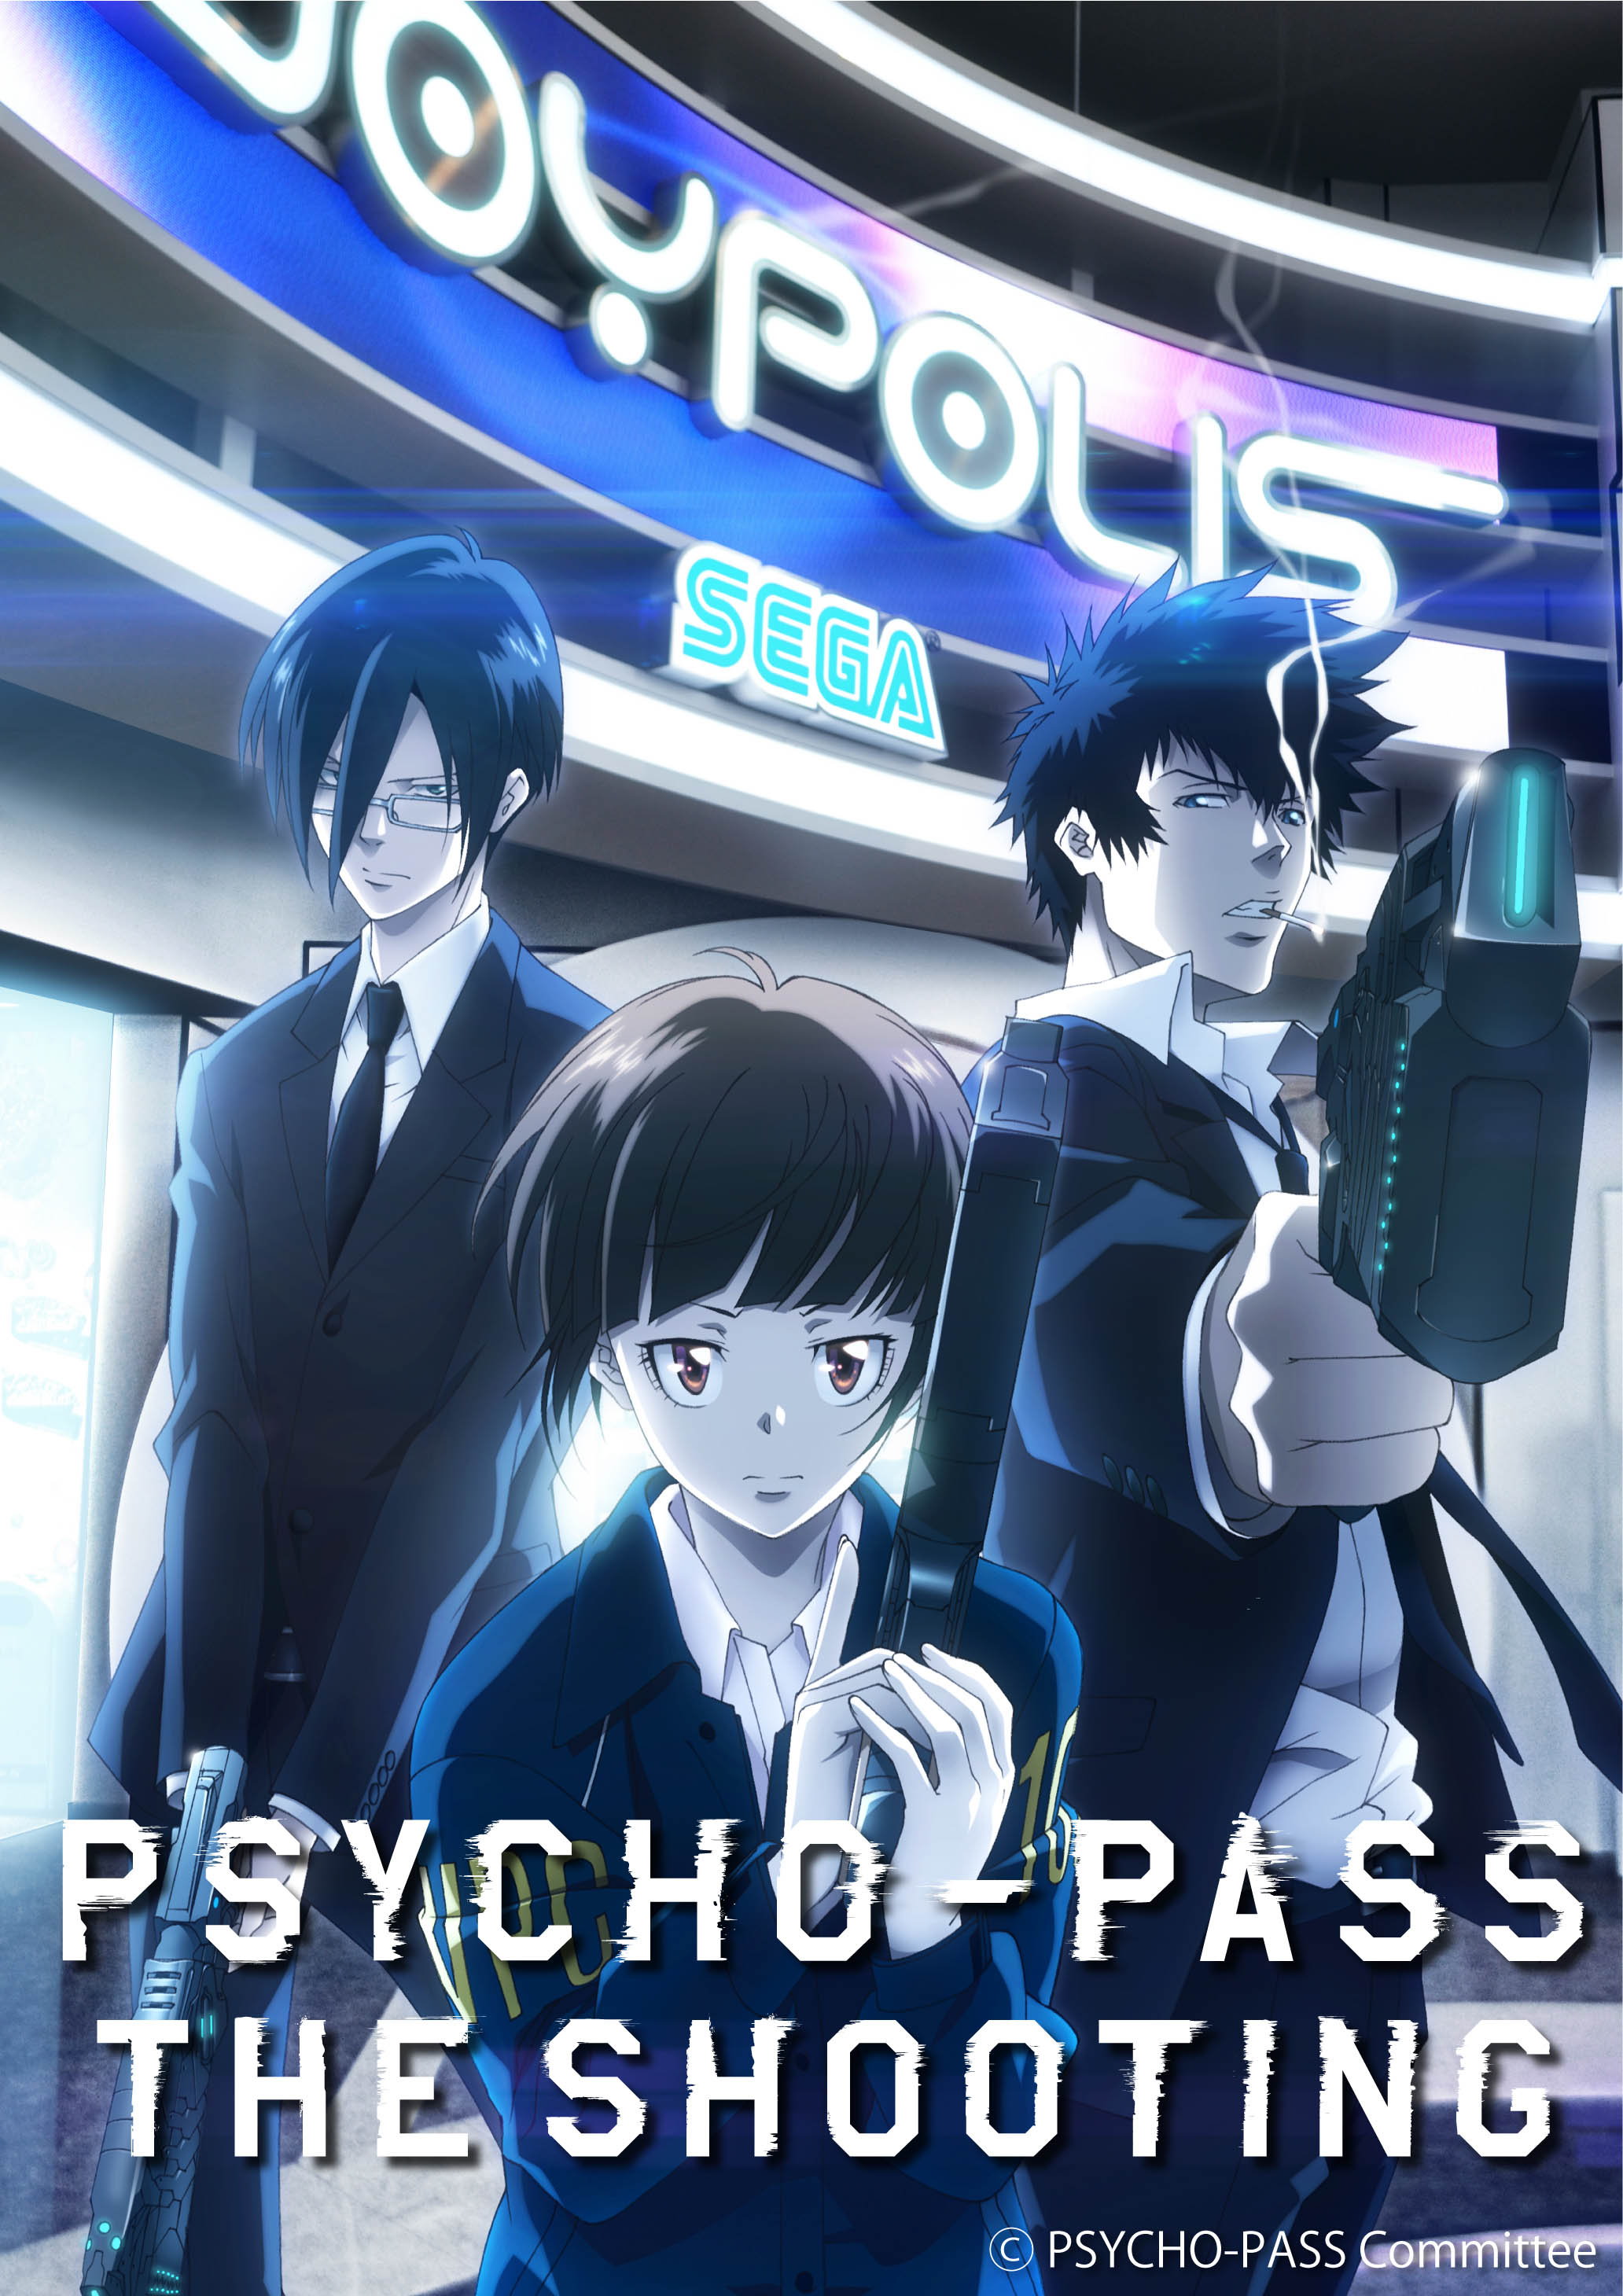 東京ジョイポリスと人気アニメ Psycho Pass サイコパス がコラボレーション 新アトラクション Psycho Pass サイコパス The Shooting 登場 株式会社セガのプレスリリース